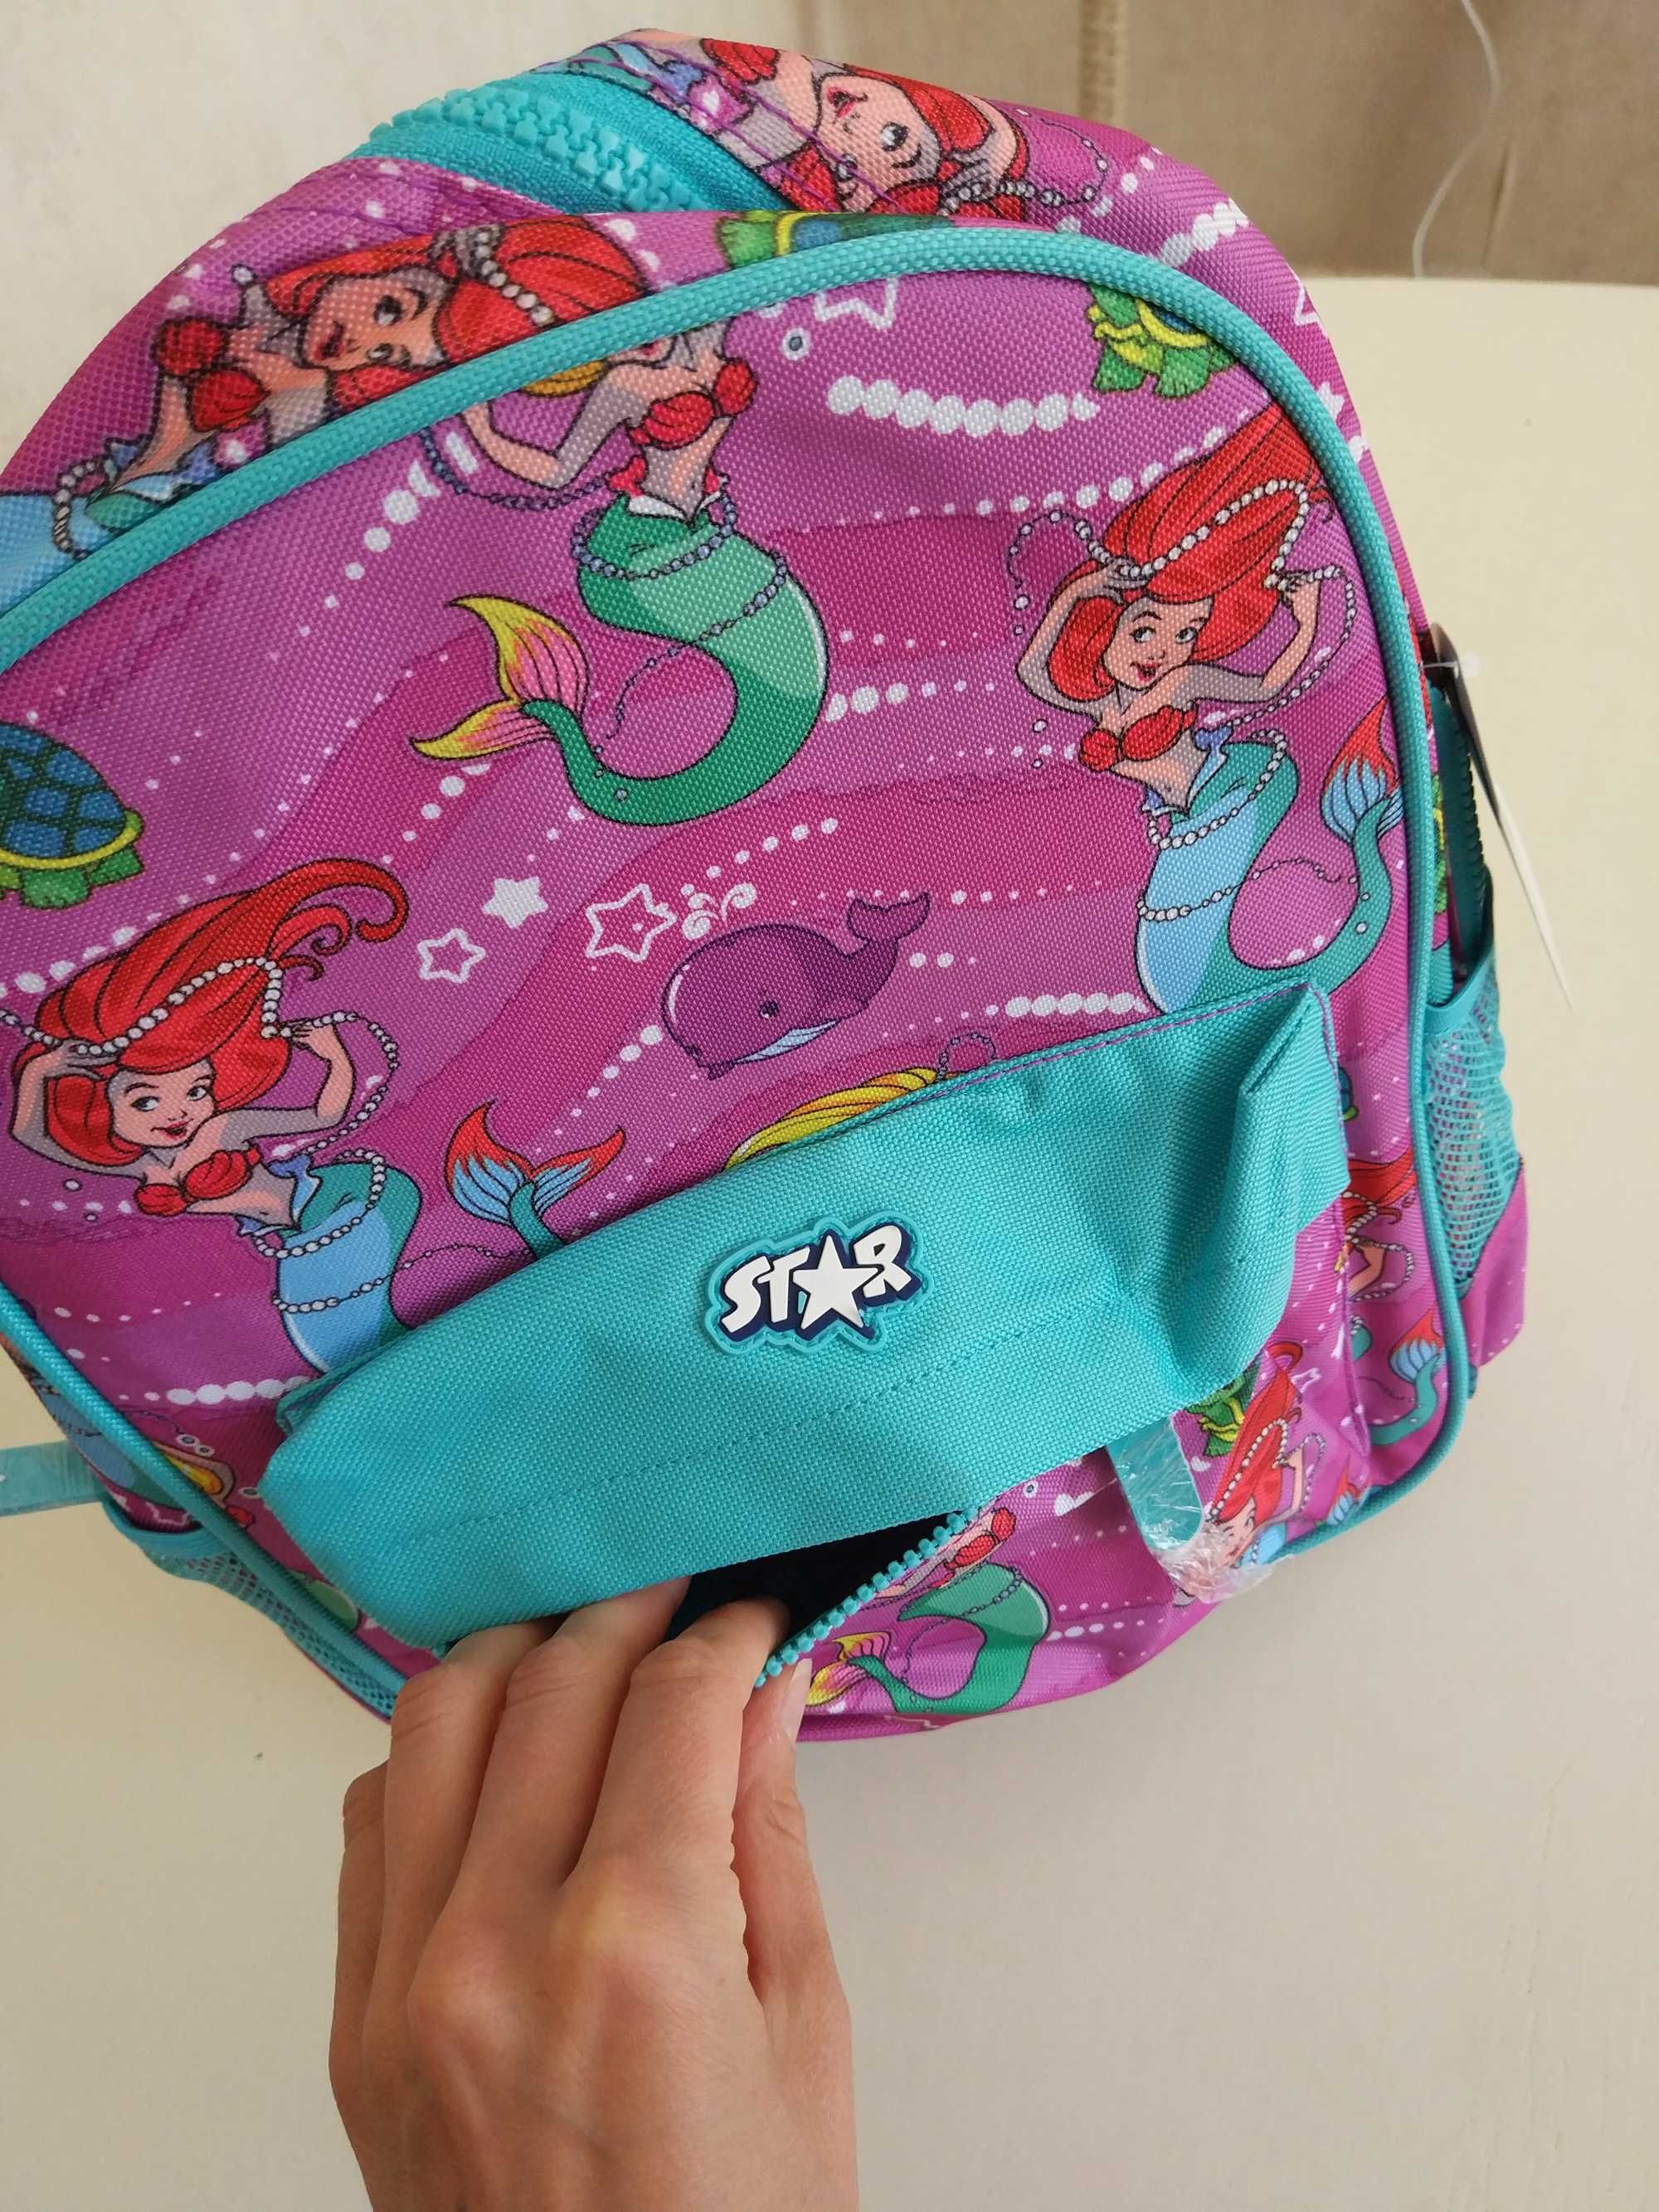 Рюкзак Disney Star Англия с русалкой ранец Дисней отличный подарок